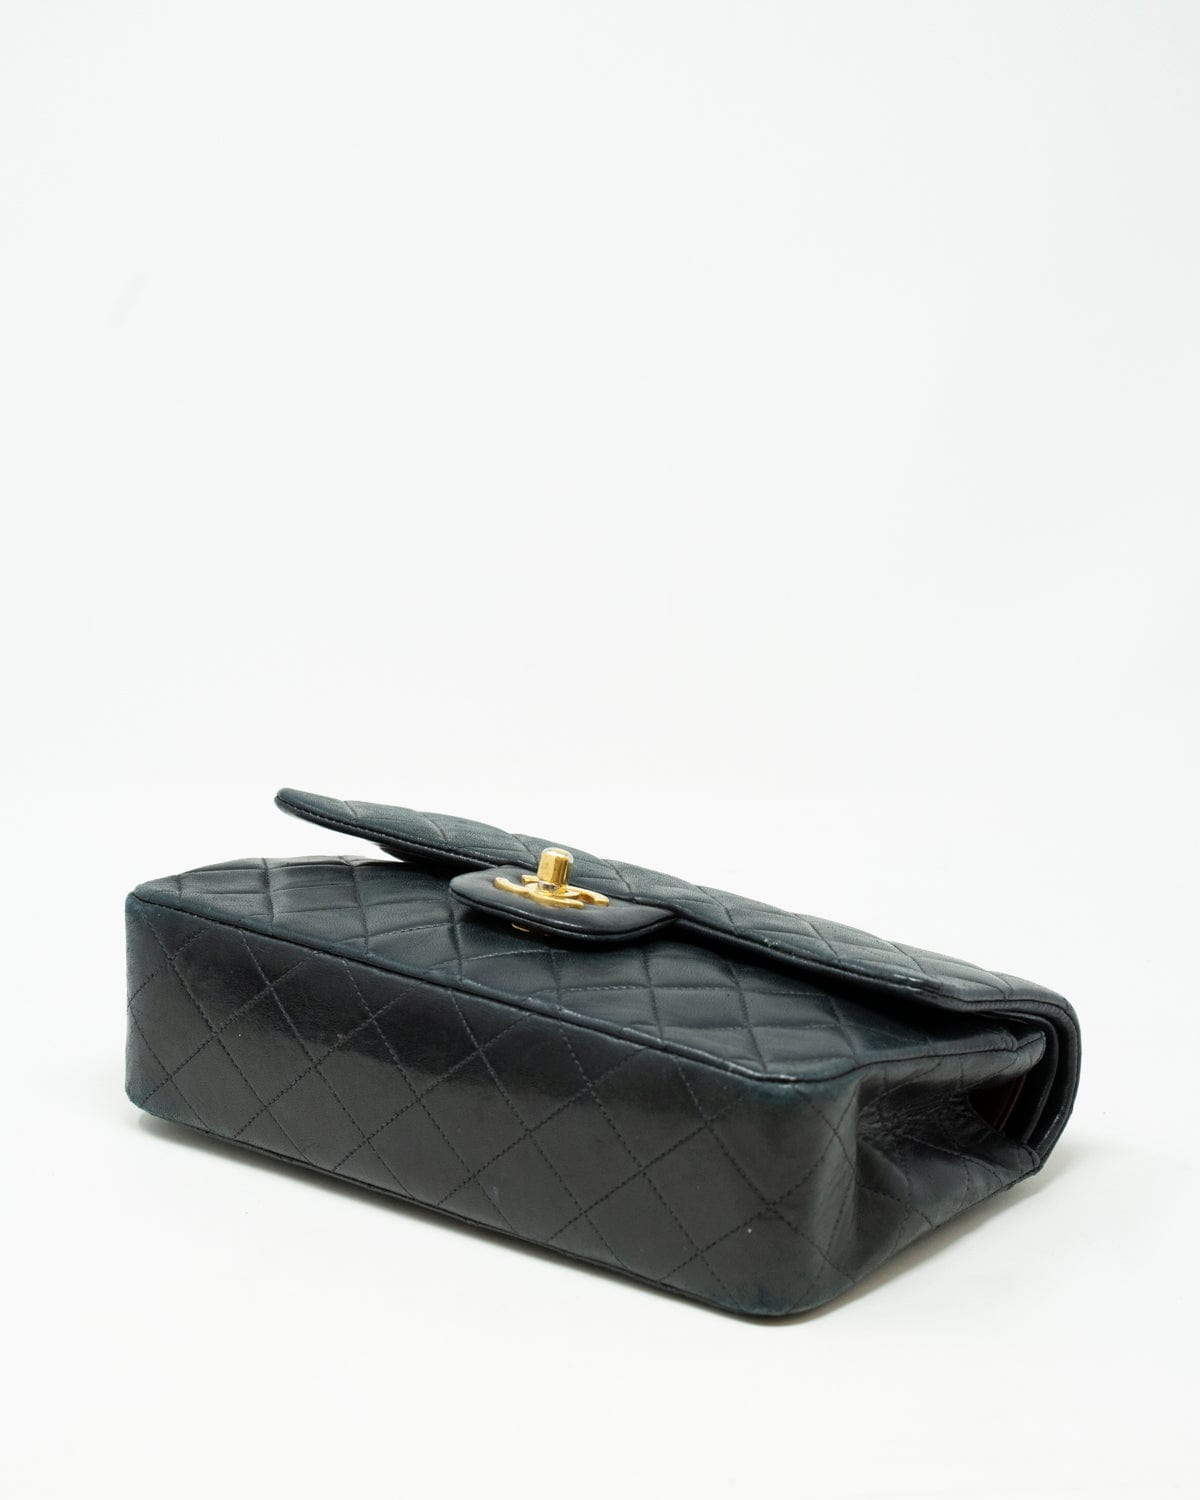 Chanel Chanel Black Lambskin 9 inch Classic Flap Bag GHW - AGL1787